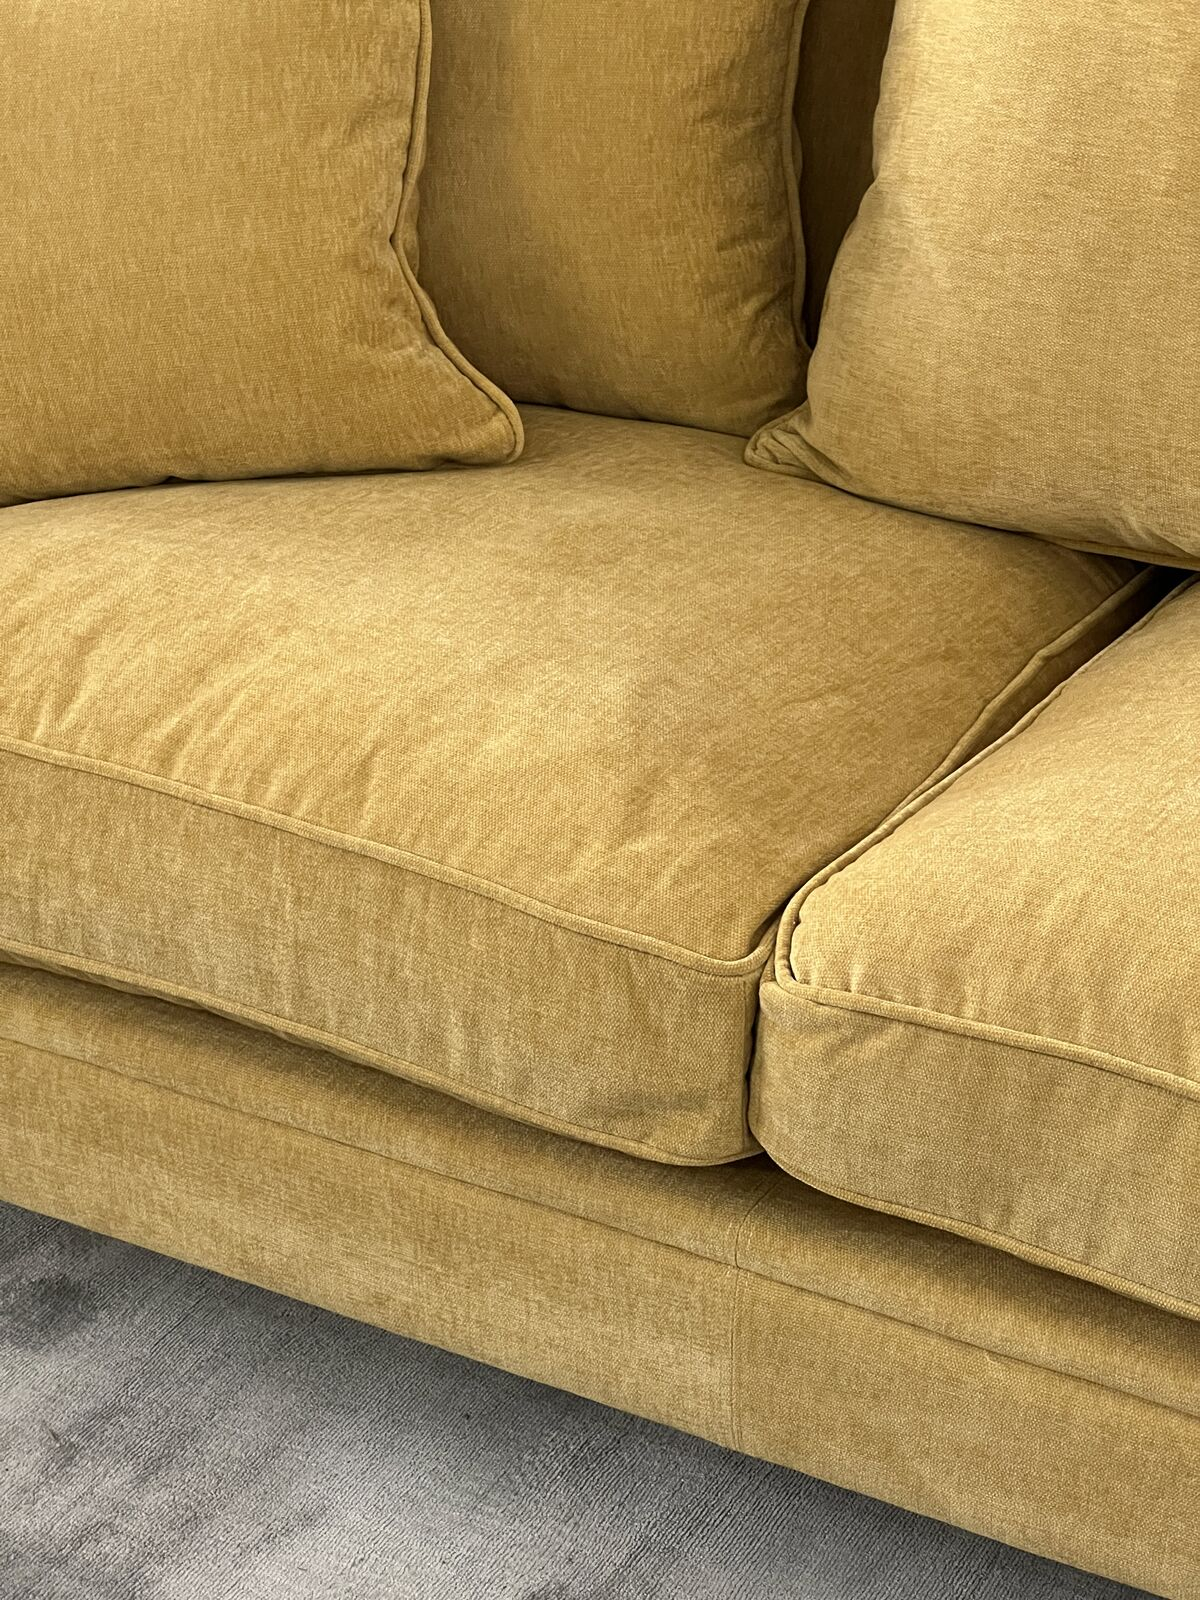 3 seater sofa upholstered in mustard velvet